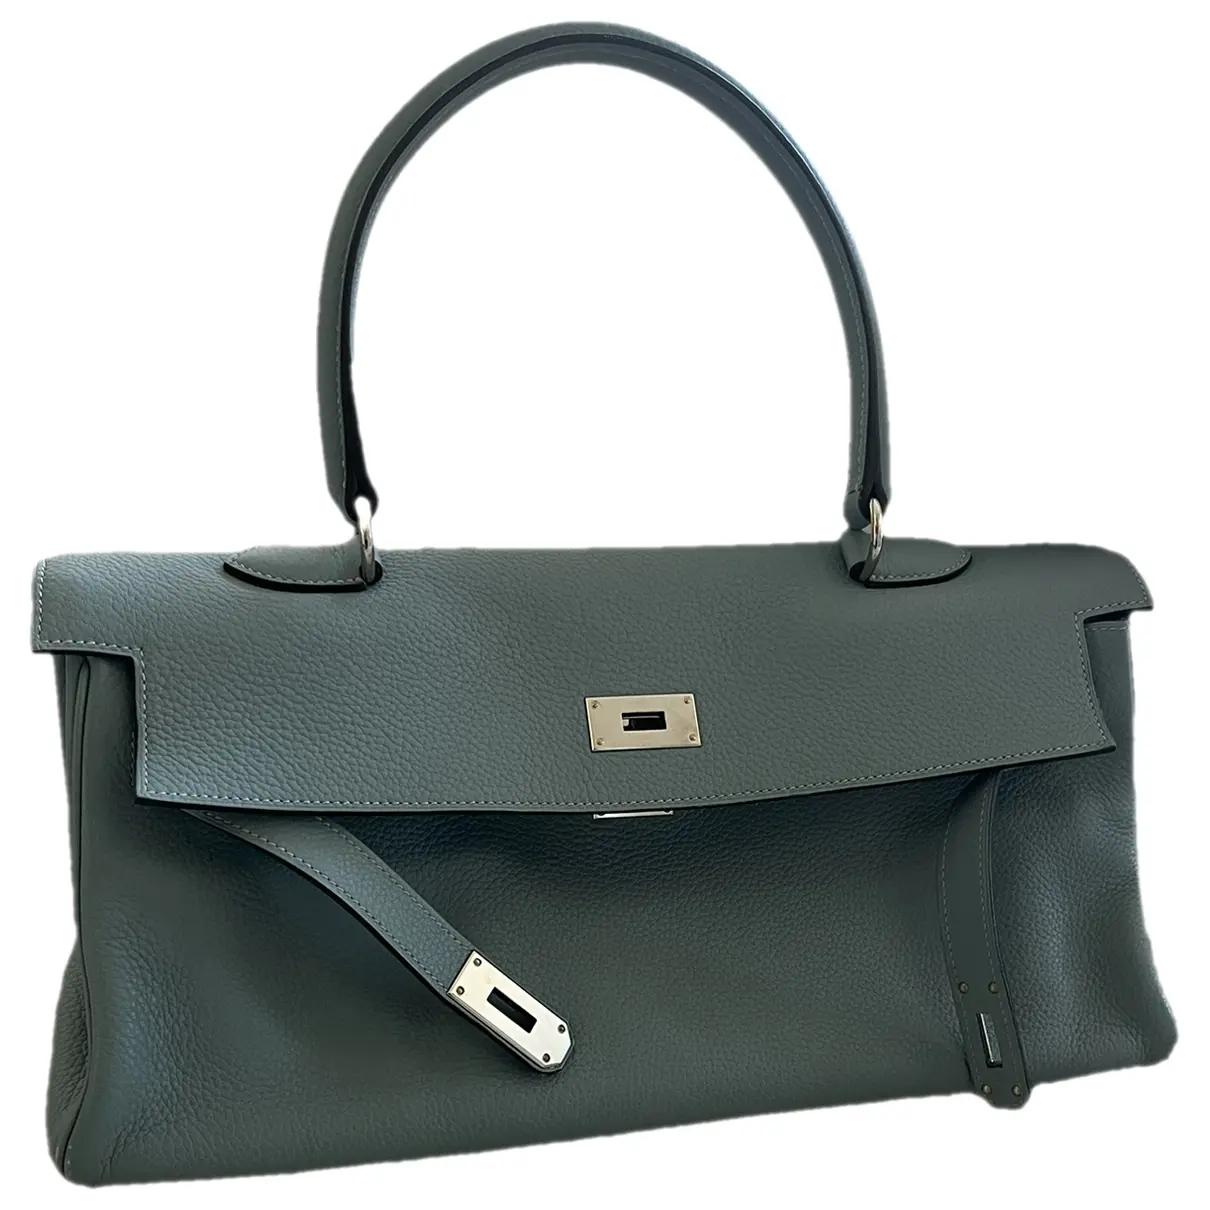 Kelly Shoulder leather handbag